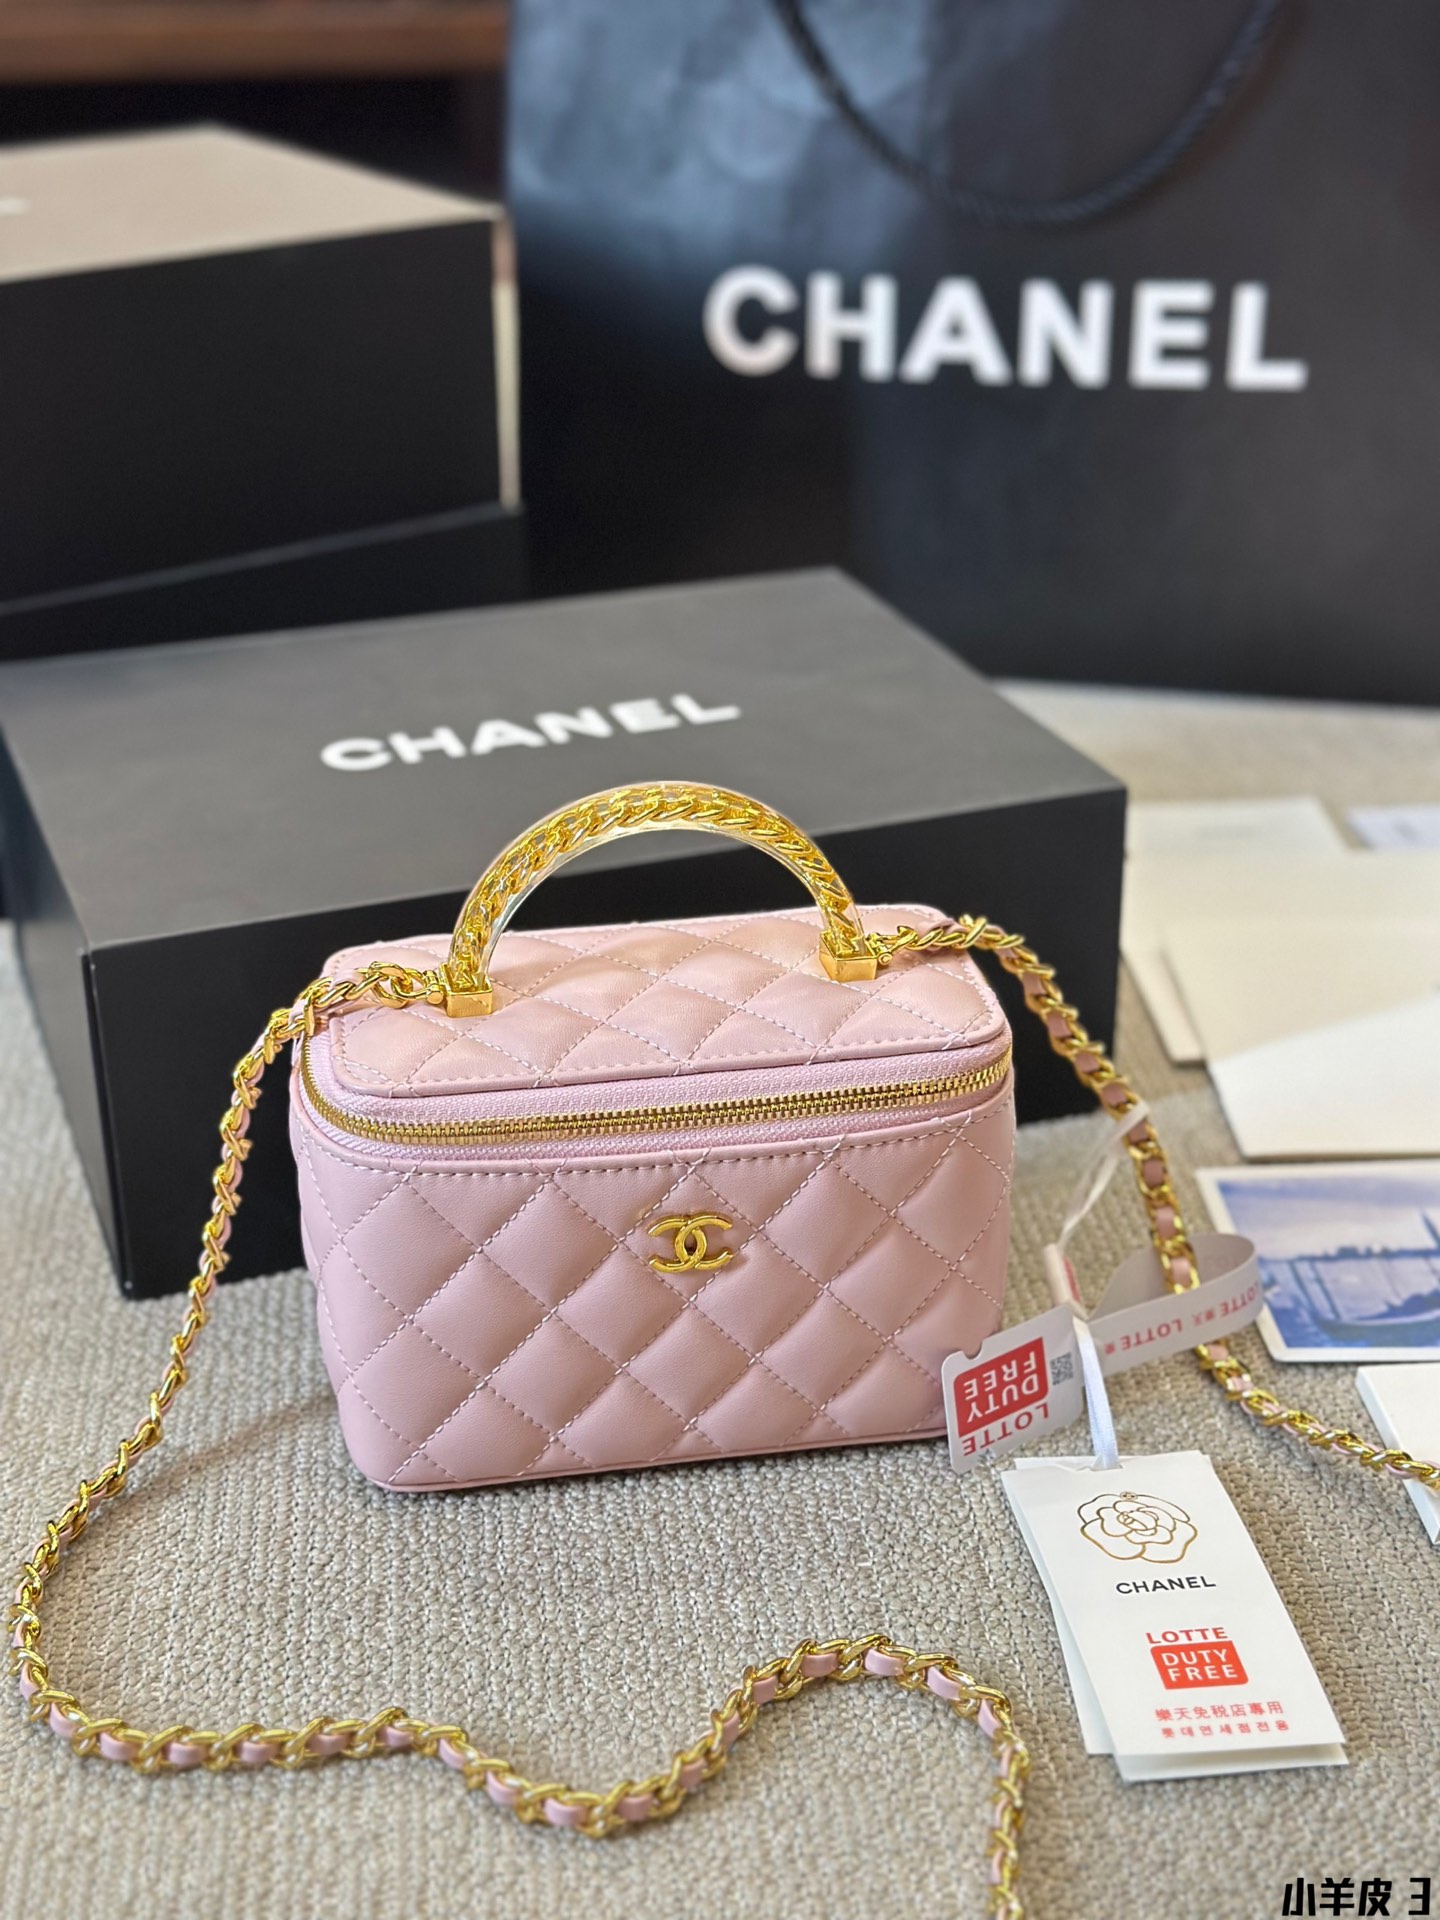 AAA -Qualitätsreplik
 Chanel Taschen Kosmetiktaschen Silber Weiß Mit Diamanten besetzt Alles Kupfer Lammfell Schaffell